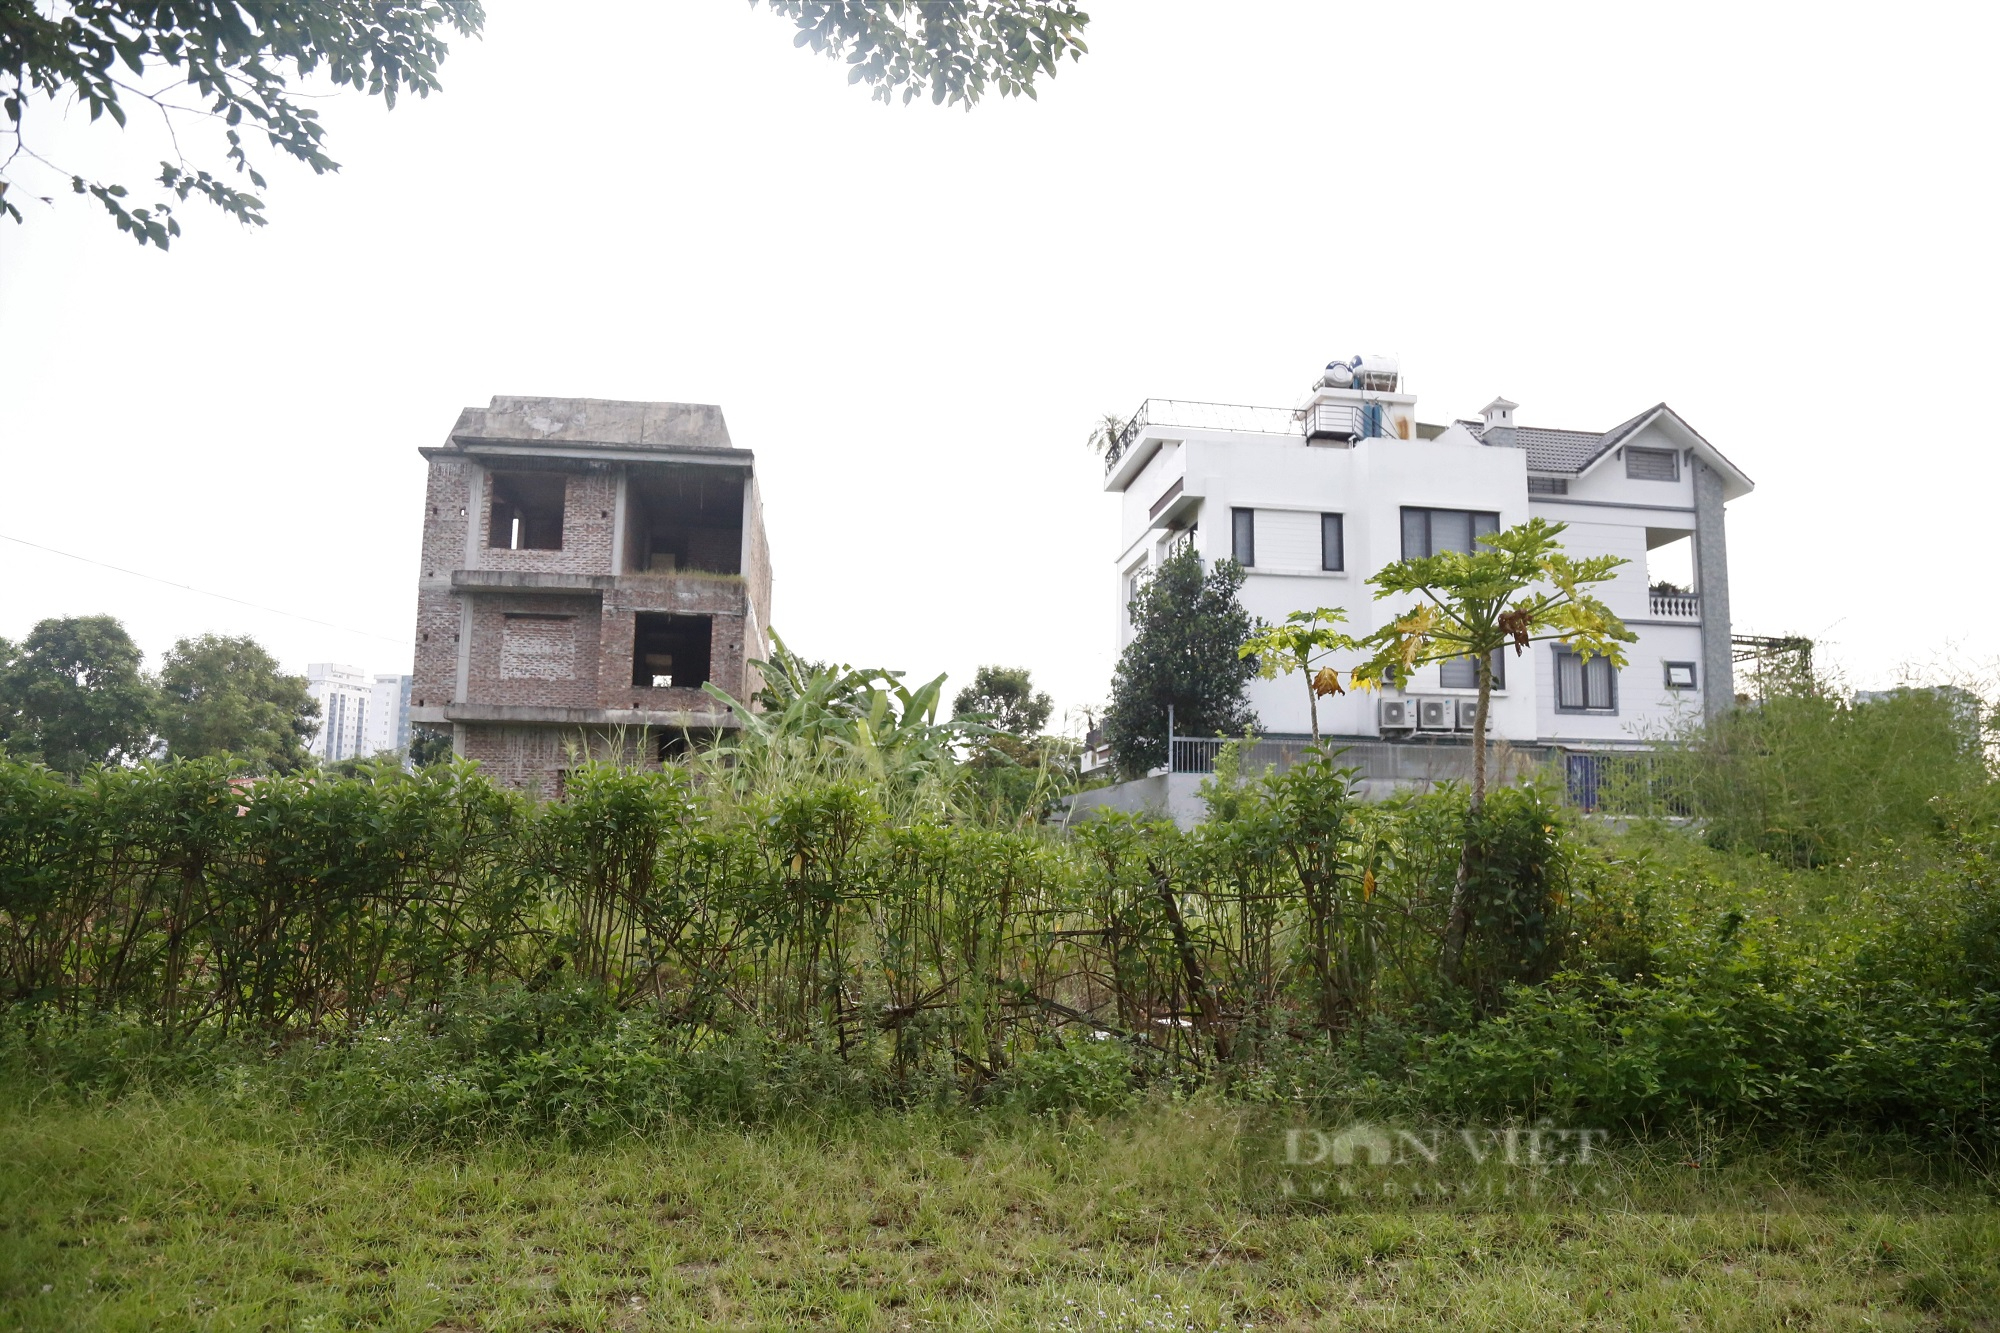 Hà Nội: Dự án khu đô thị Thanh Hà Cienco 5 tạm dừng điều chỉnh pháp lý - Ảnh 1.